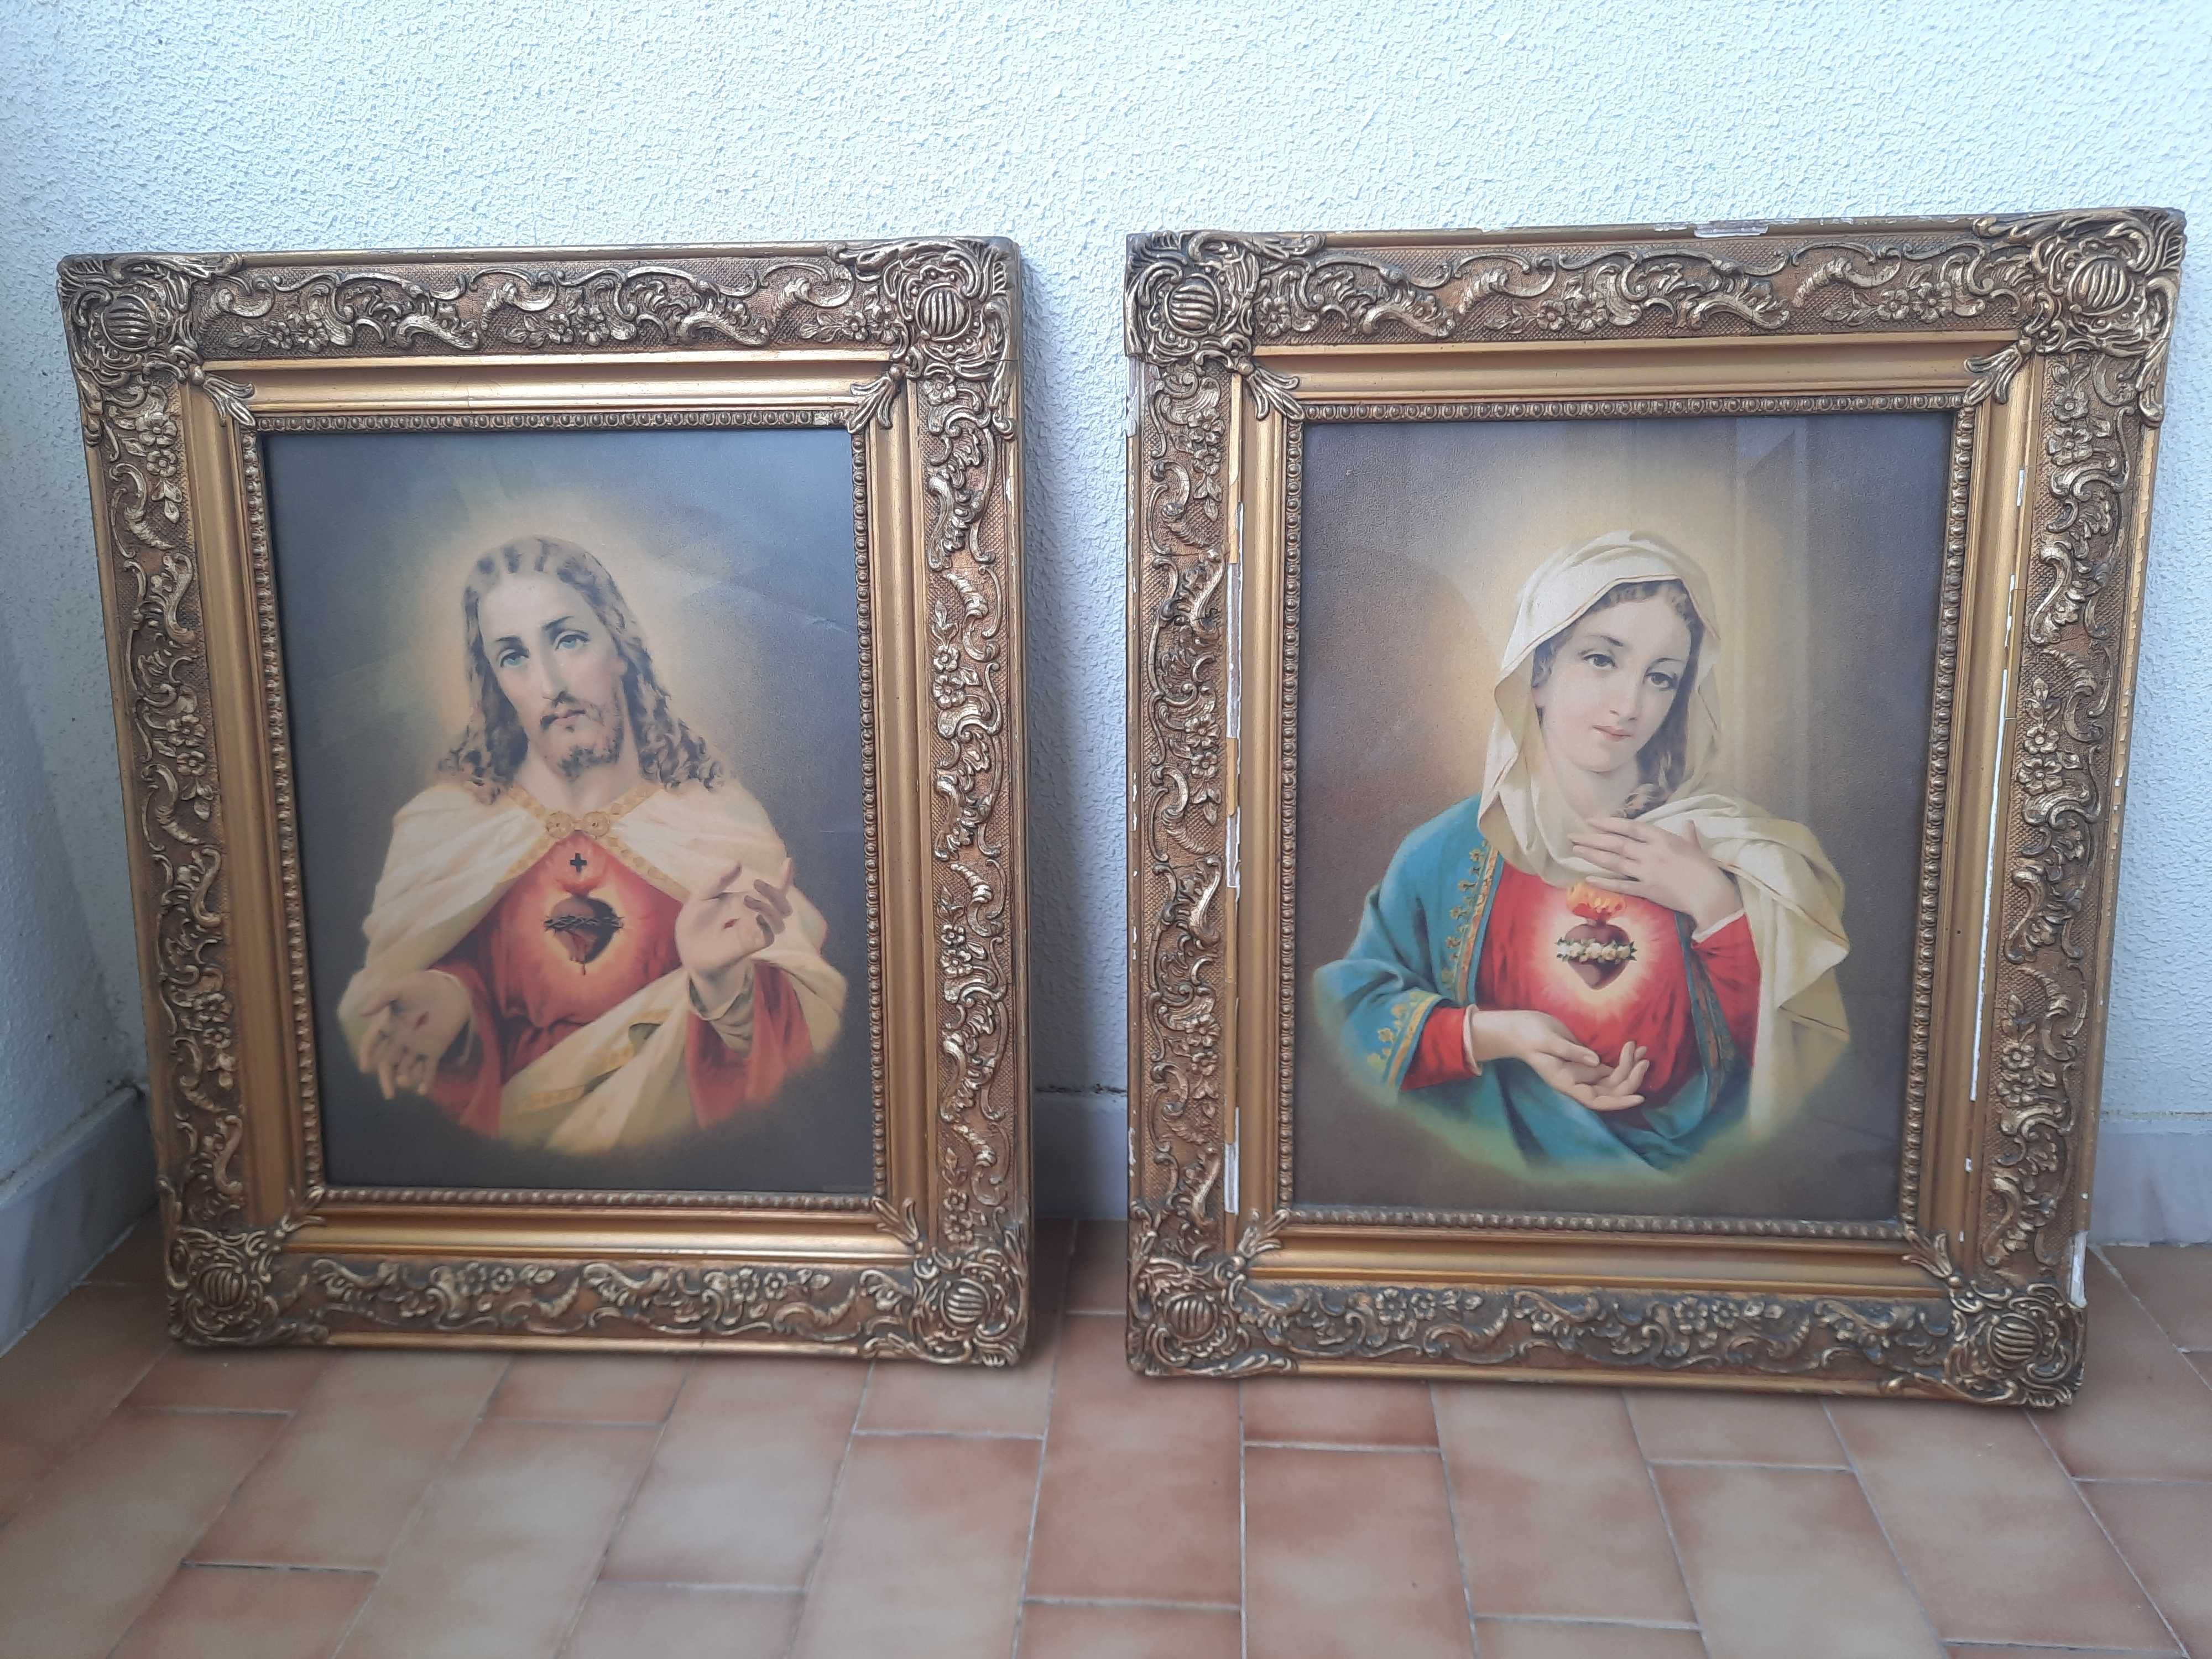 2 quadros decorativos com imagens religiosas